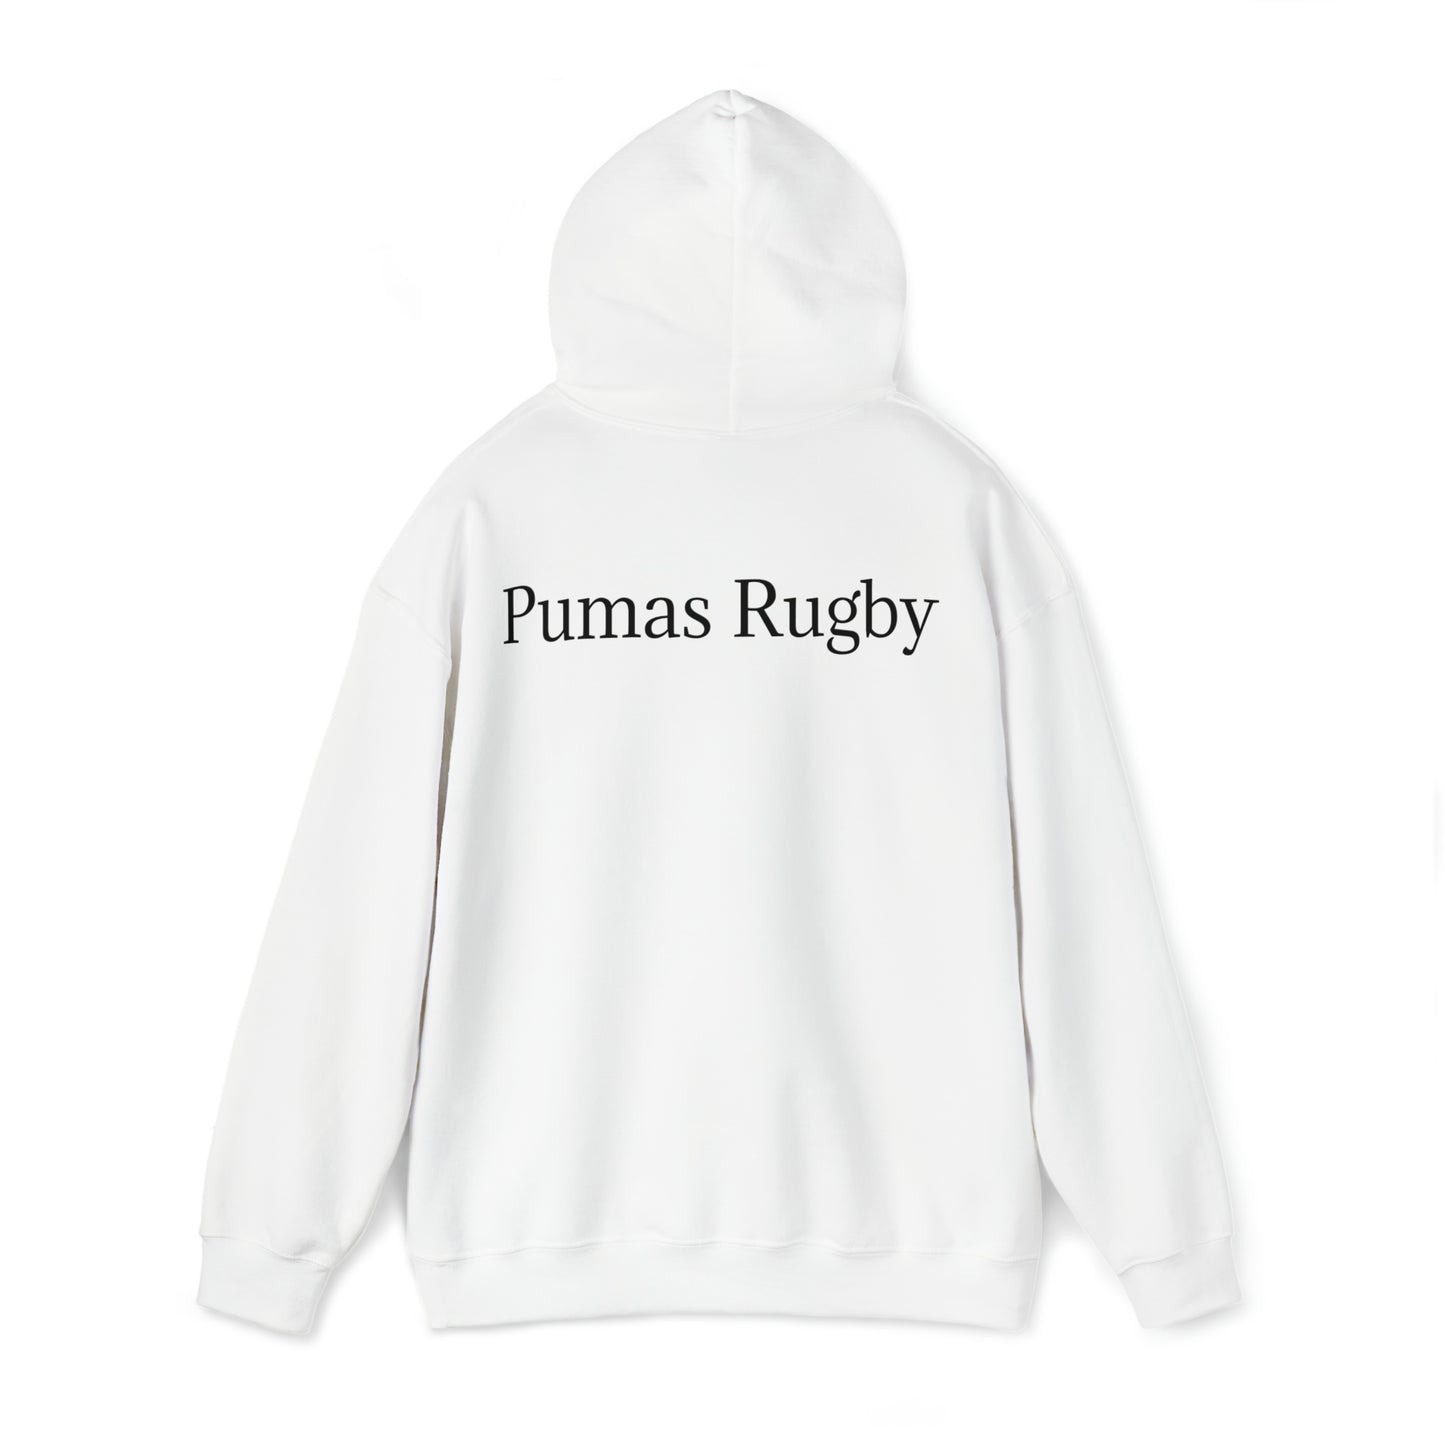 Pumas Lifting RWC - light hoodies